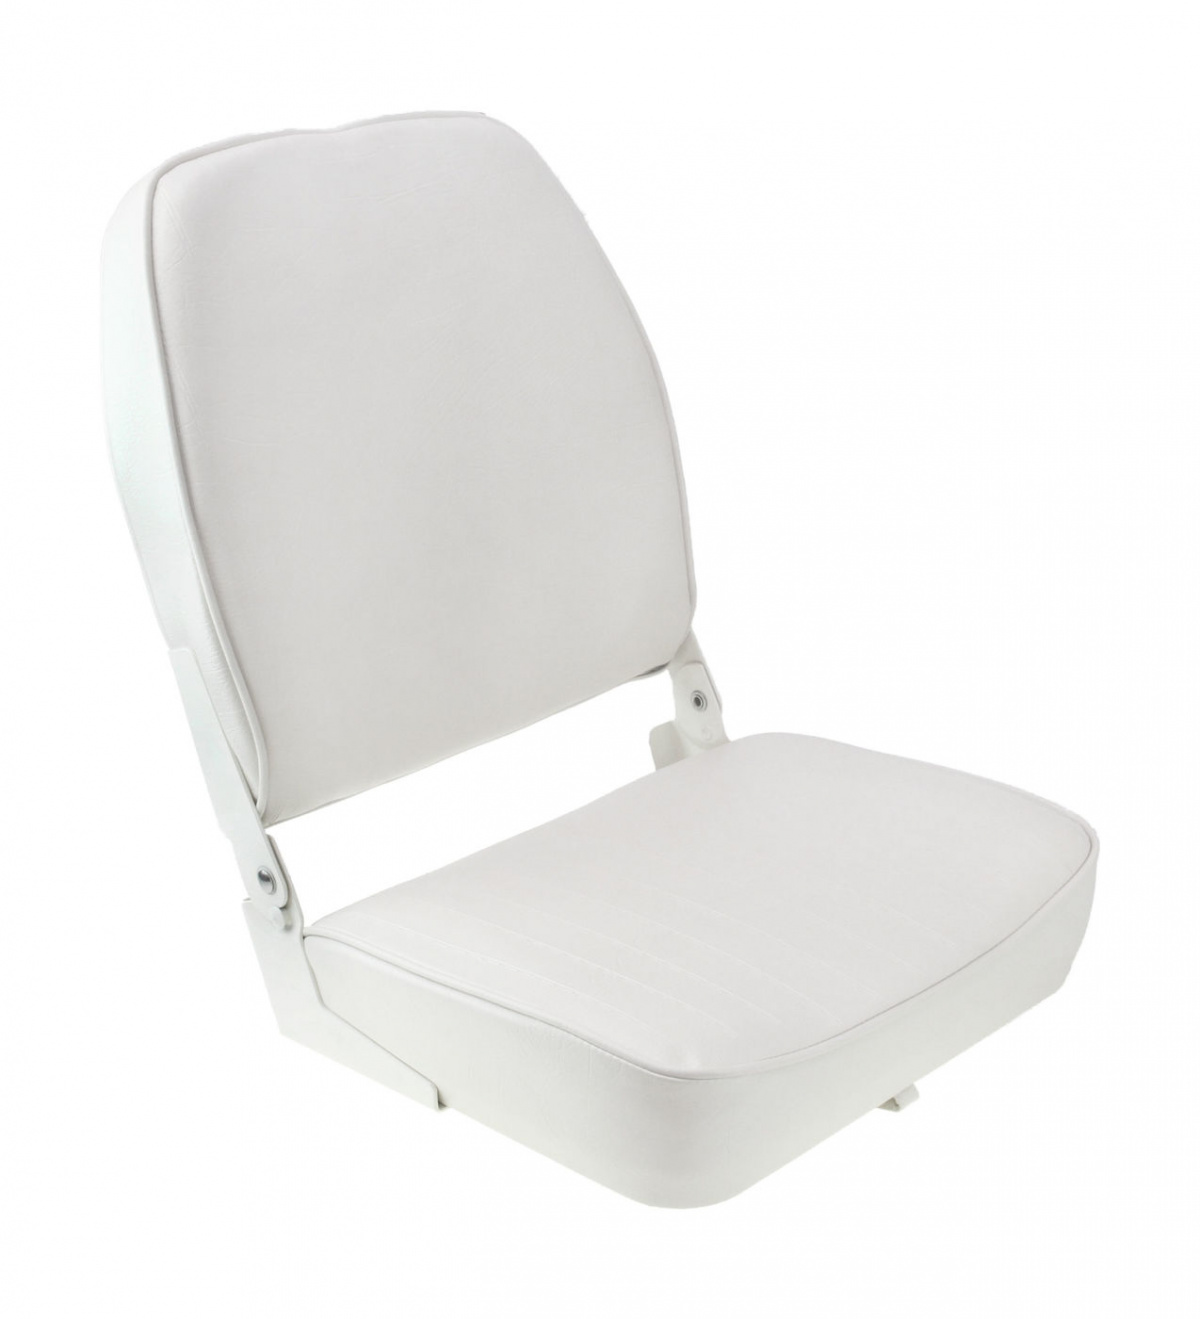 Кресло складное мягкое ECONOMY с высокой спинкой, белое, 889-7744